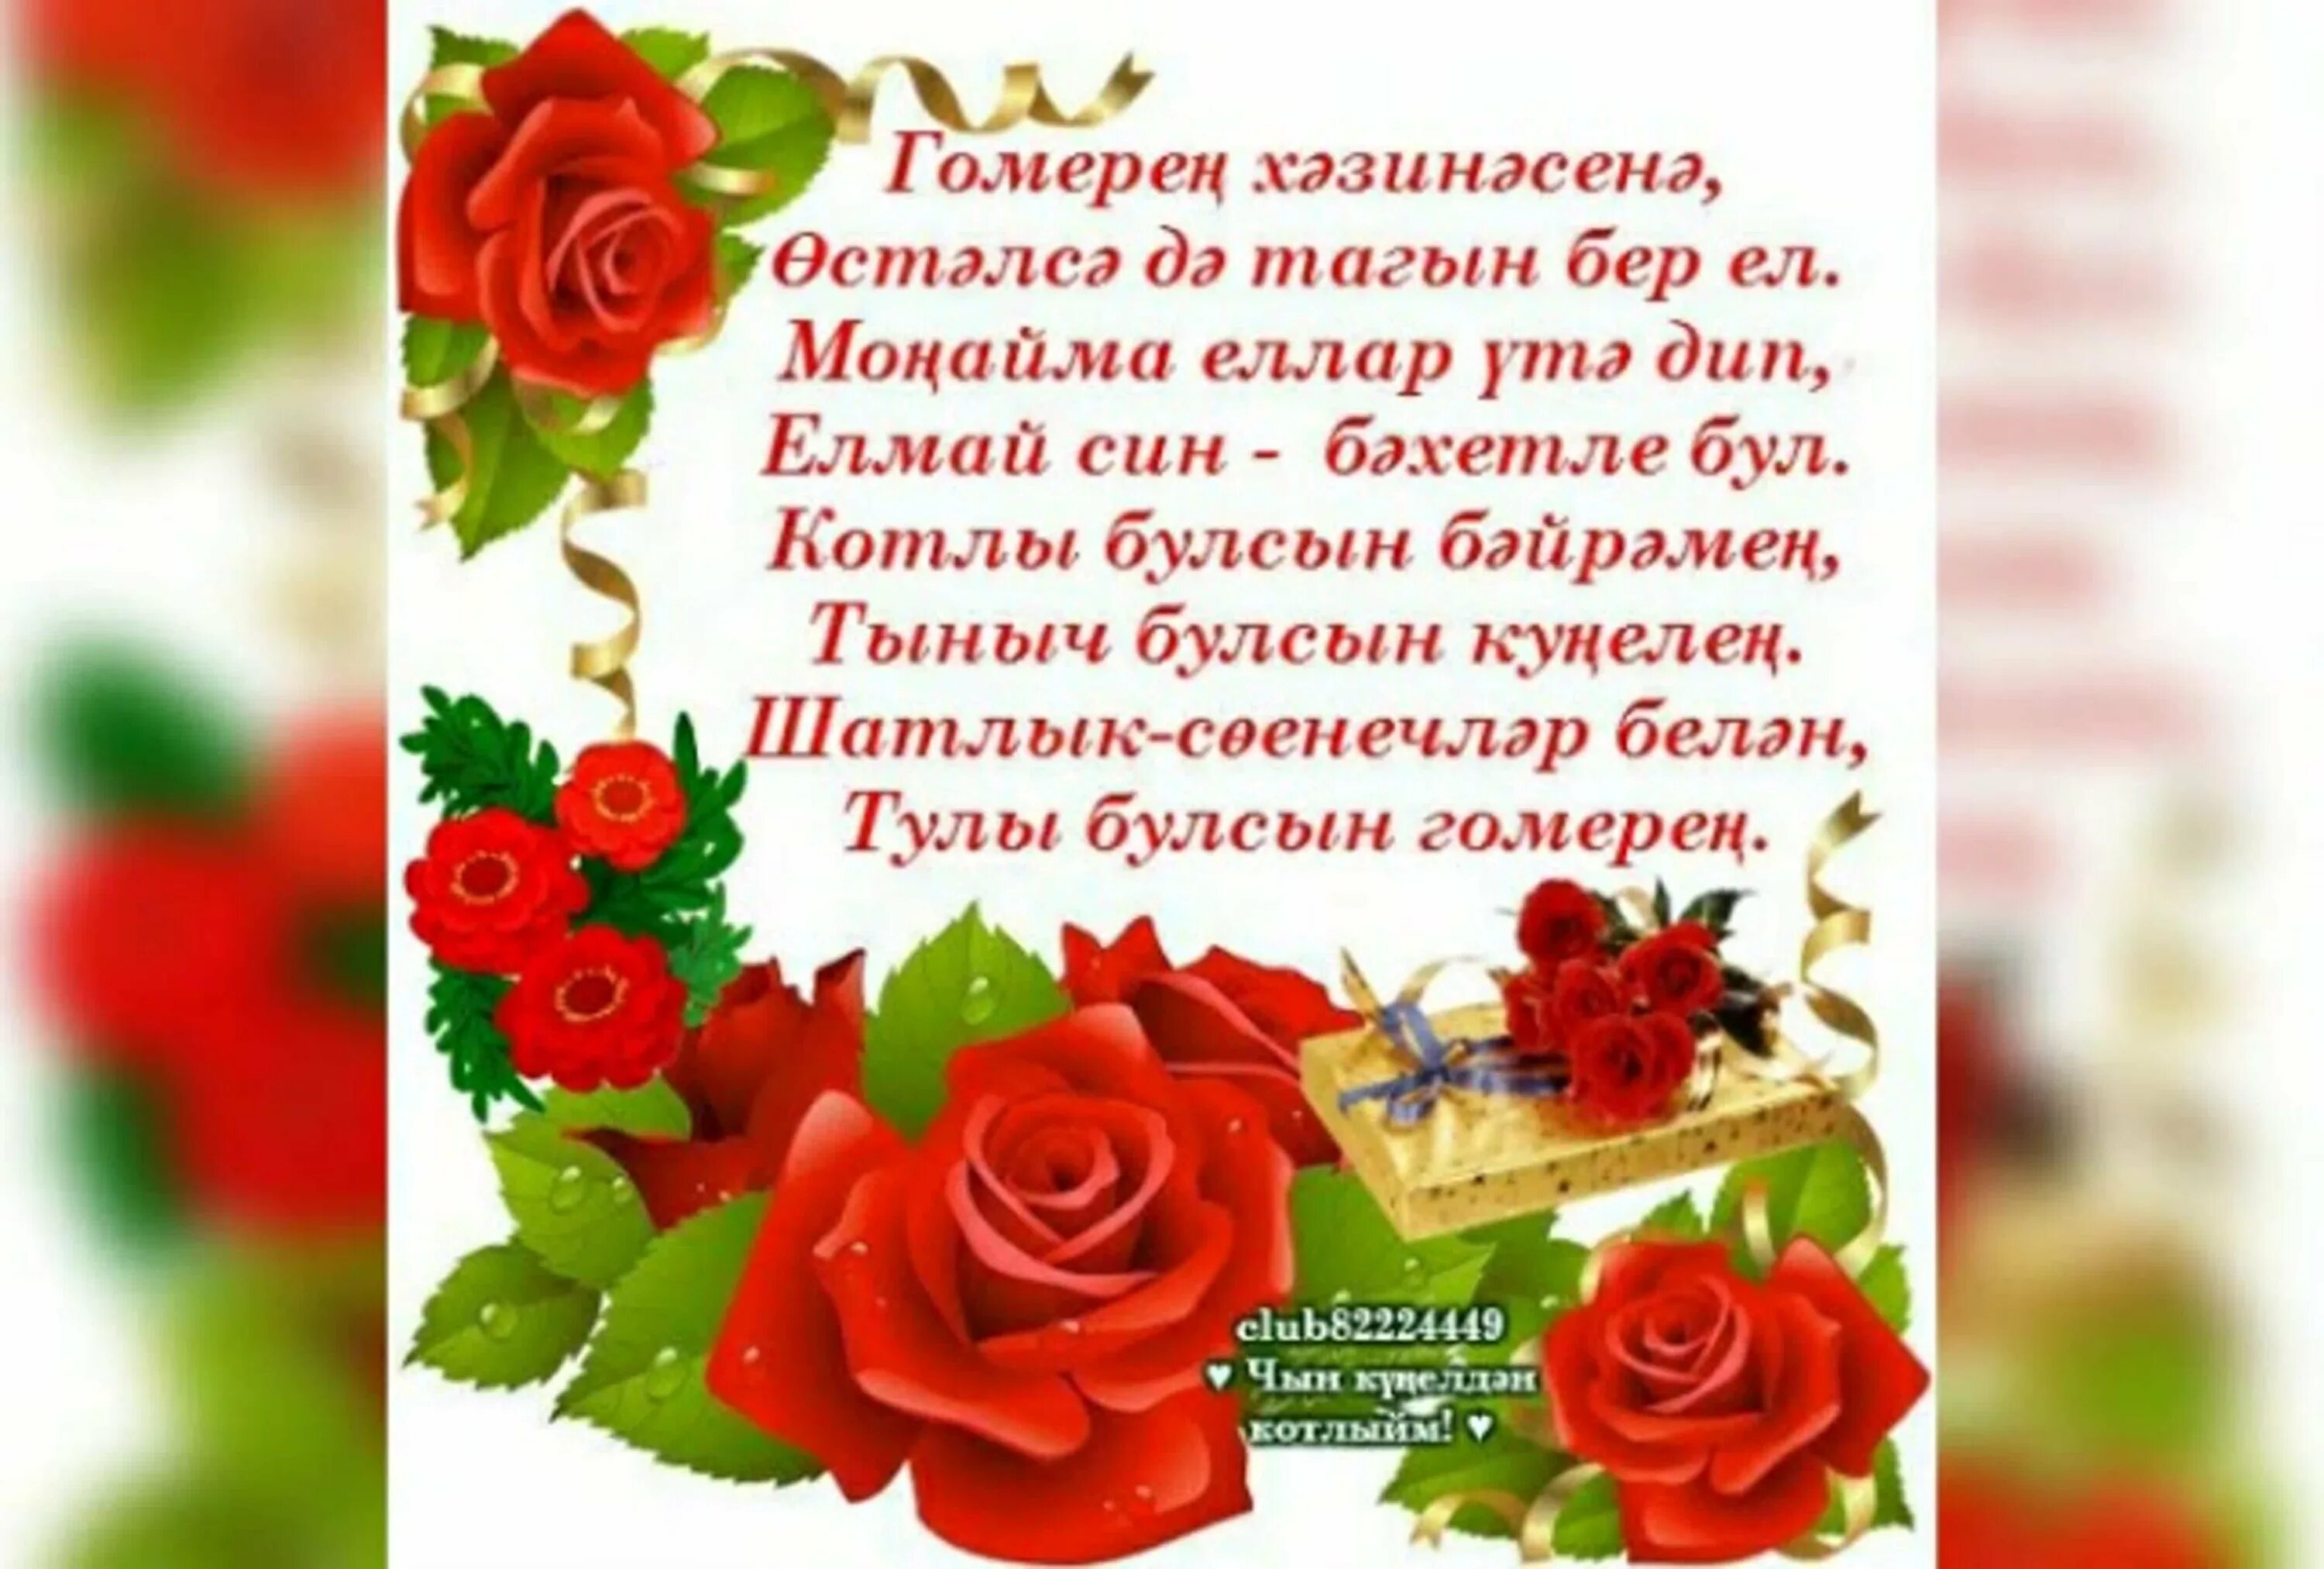 Поздравления с днём рождения на татарском языке. Поздравление на татарском языке. Татарские поздравления с днем рождения. Поздравления с днём рождения женщине на татарском языке.